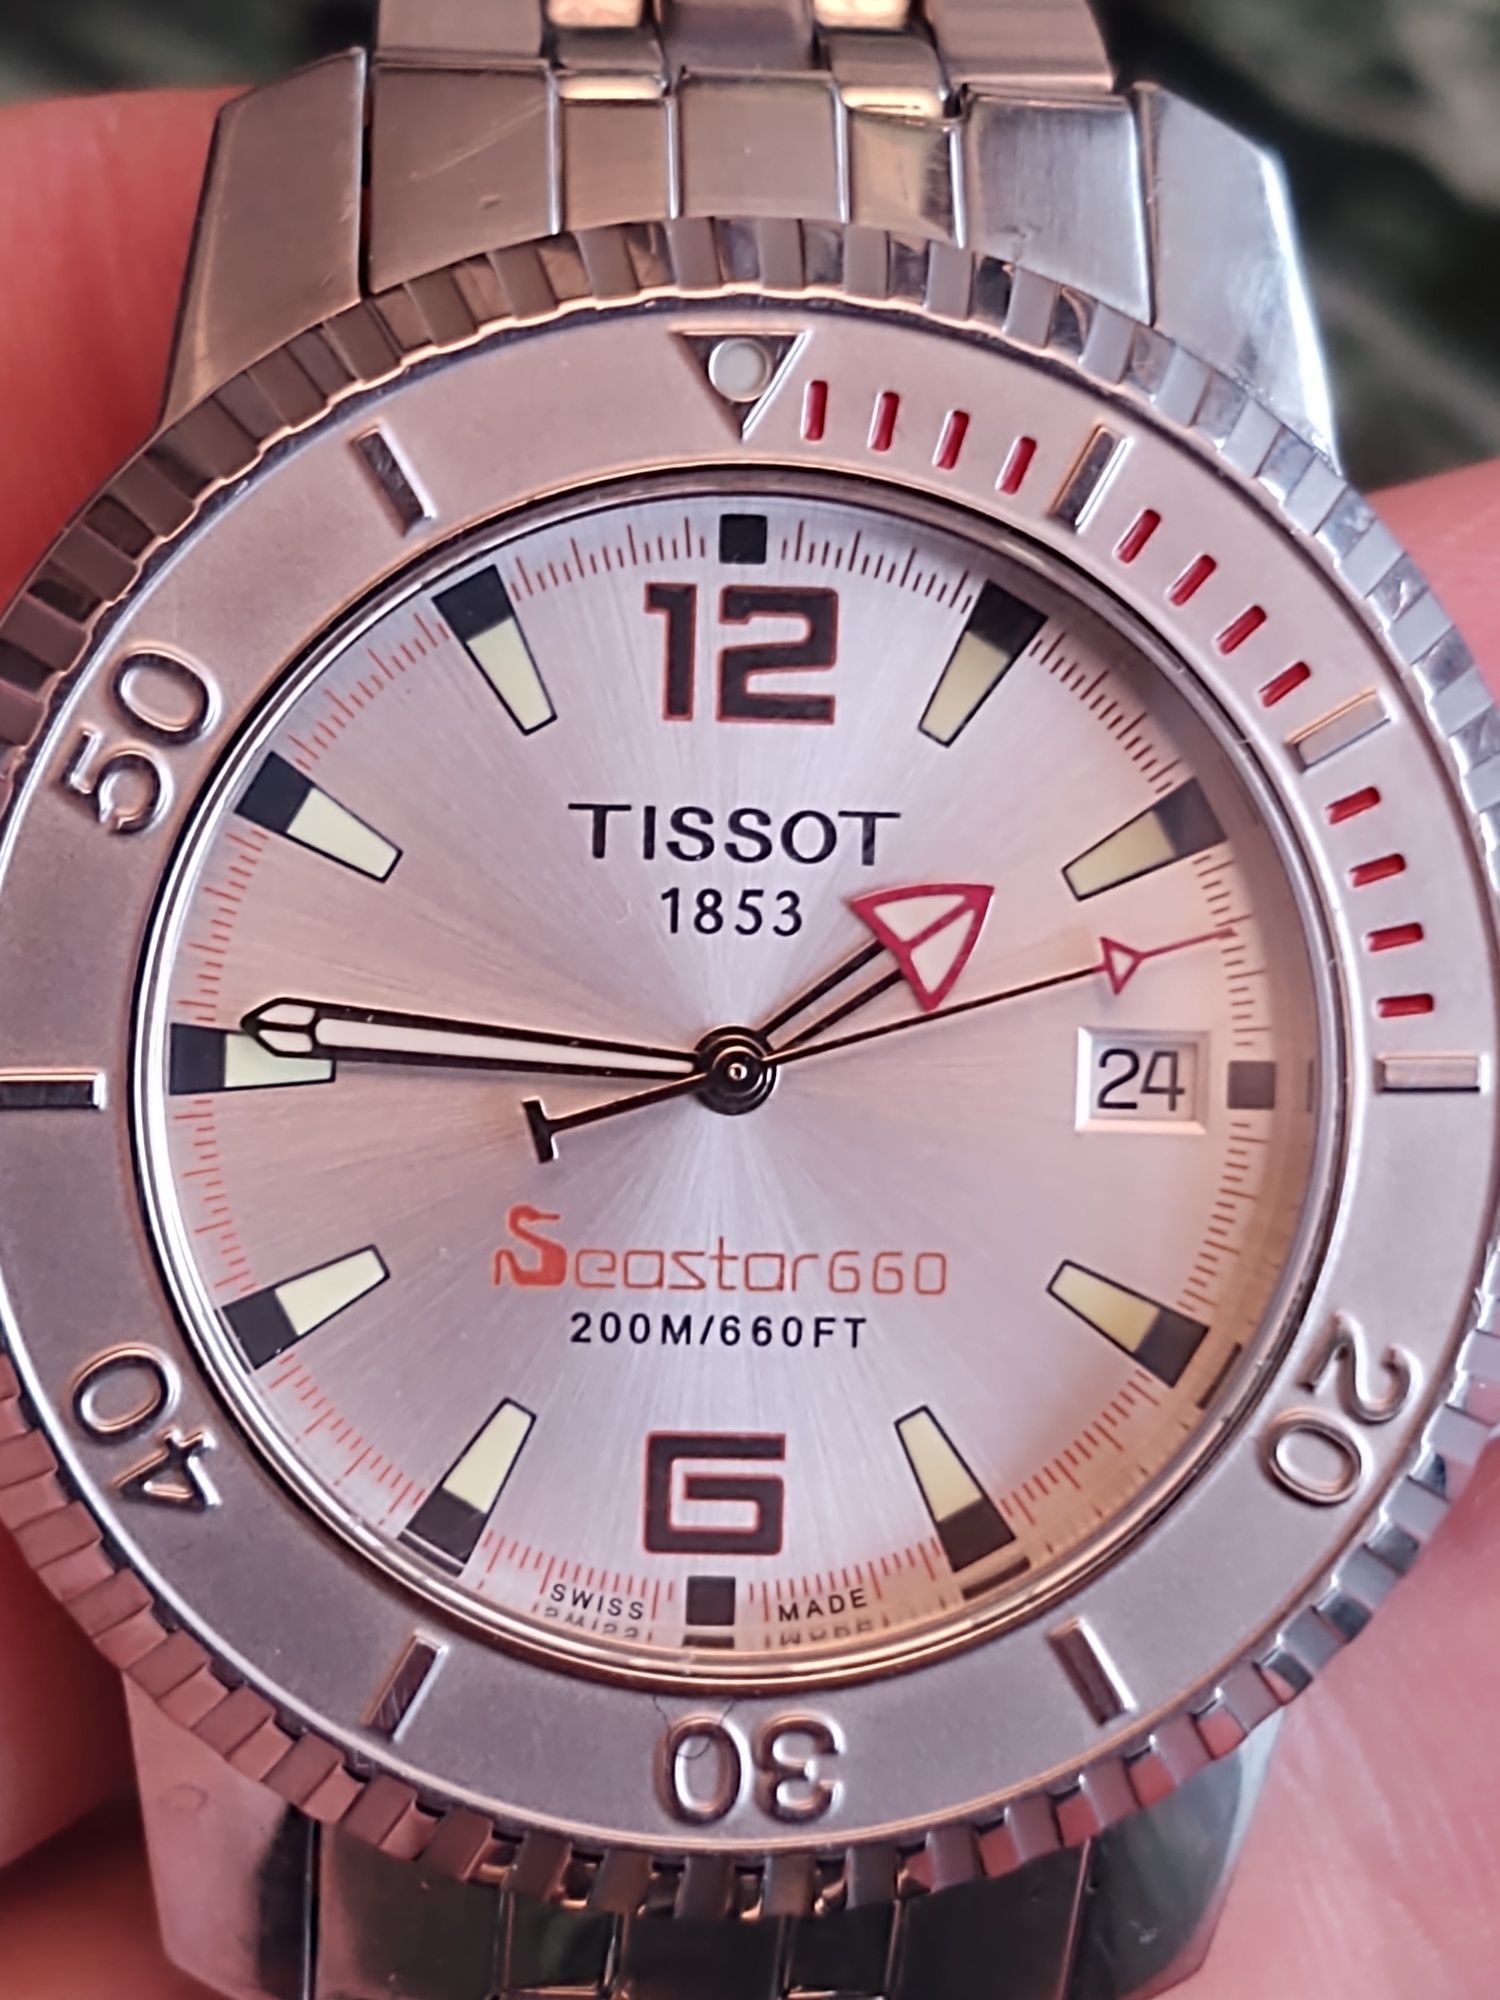 Tissot Seastar 660